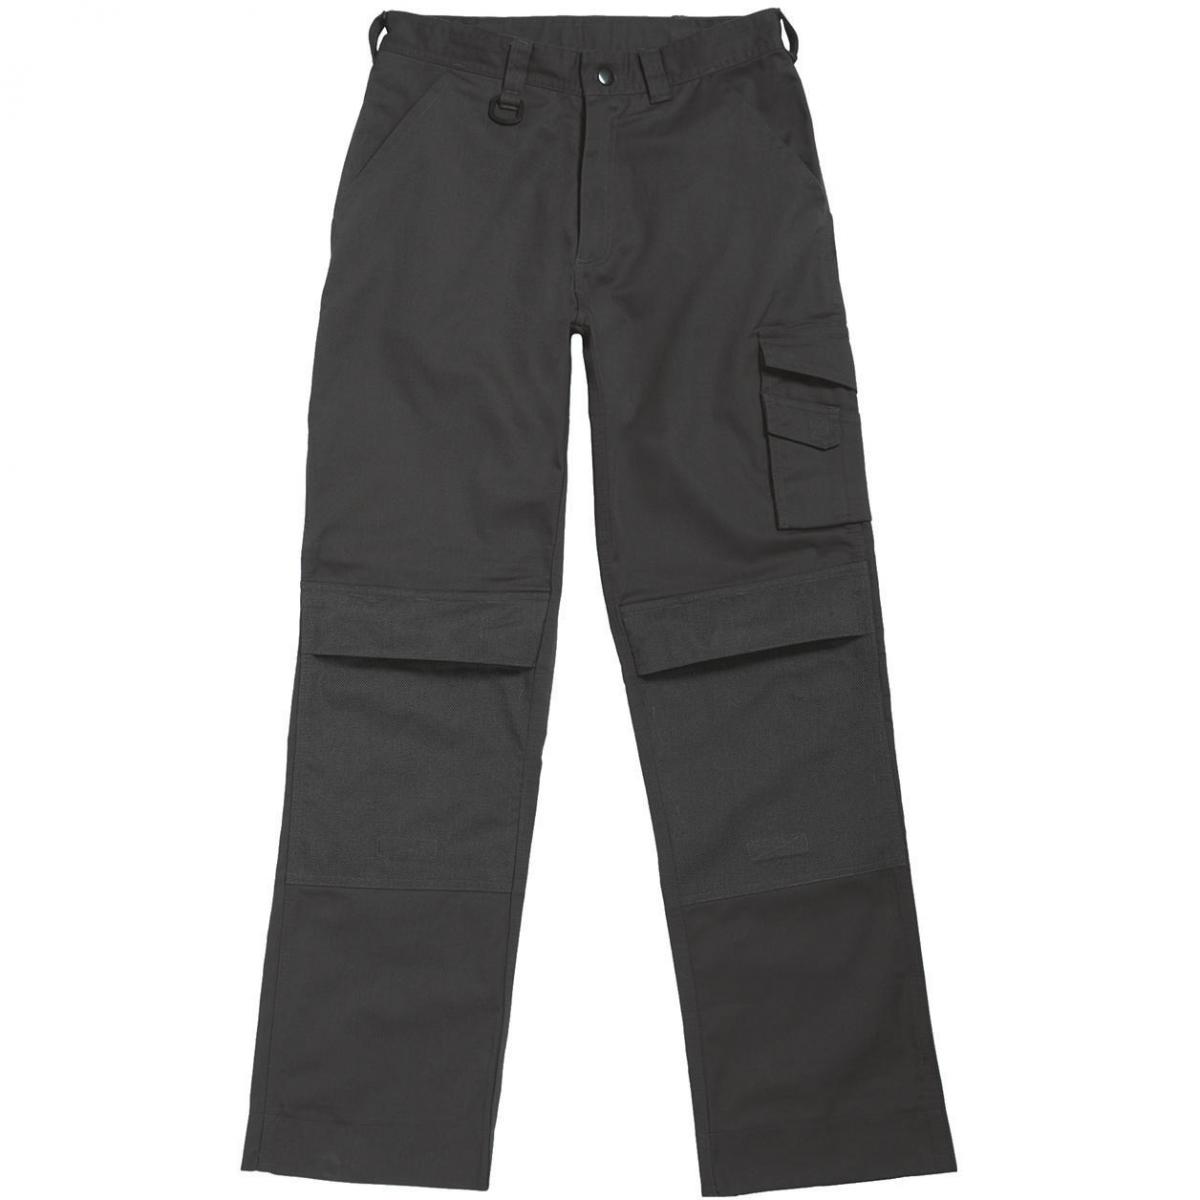 Hersteller: B&C Pro Collection Herstellernummer: BUC50 Artikelbezeichnung: Basic Workwear Trousers Einschubtaschen für Kniepolster Farbe: Steel Grey